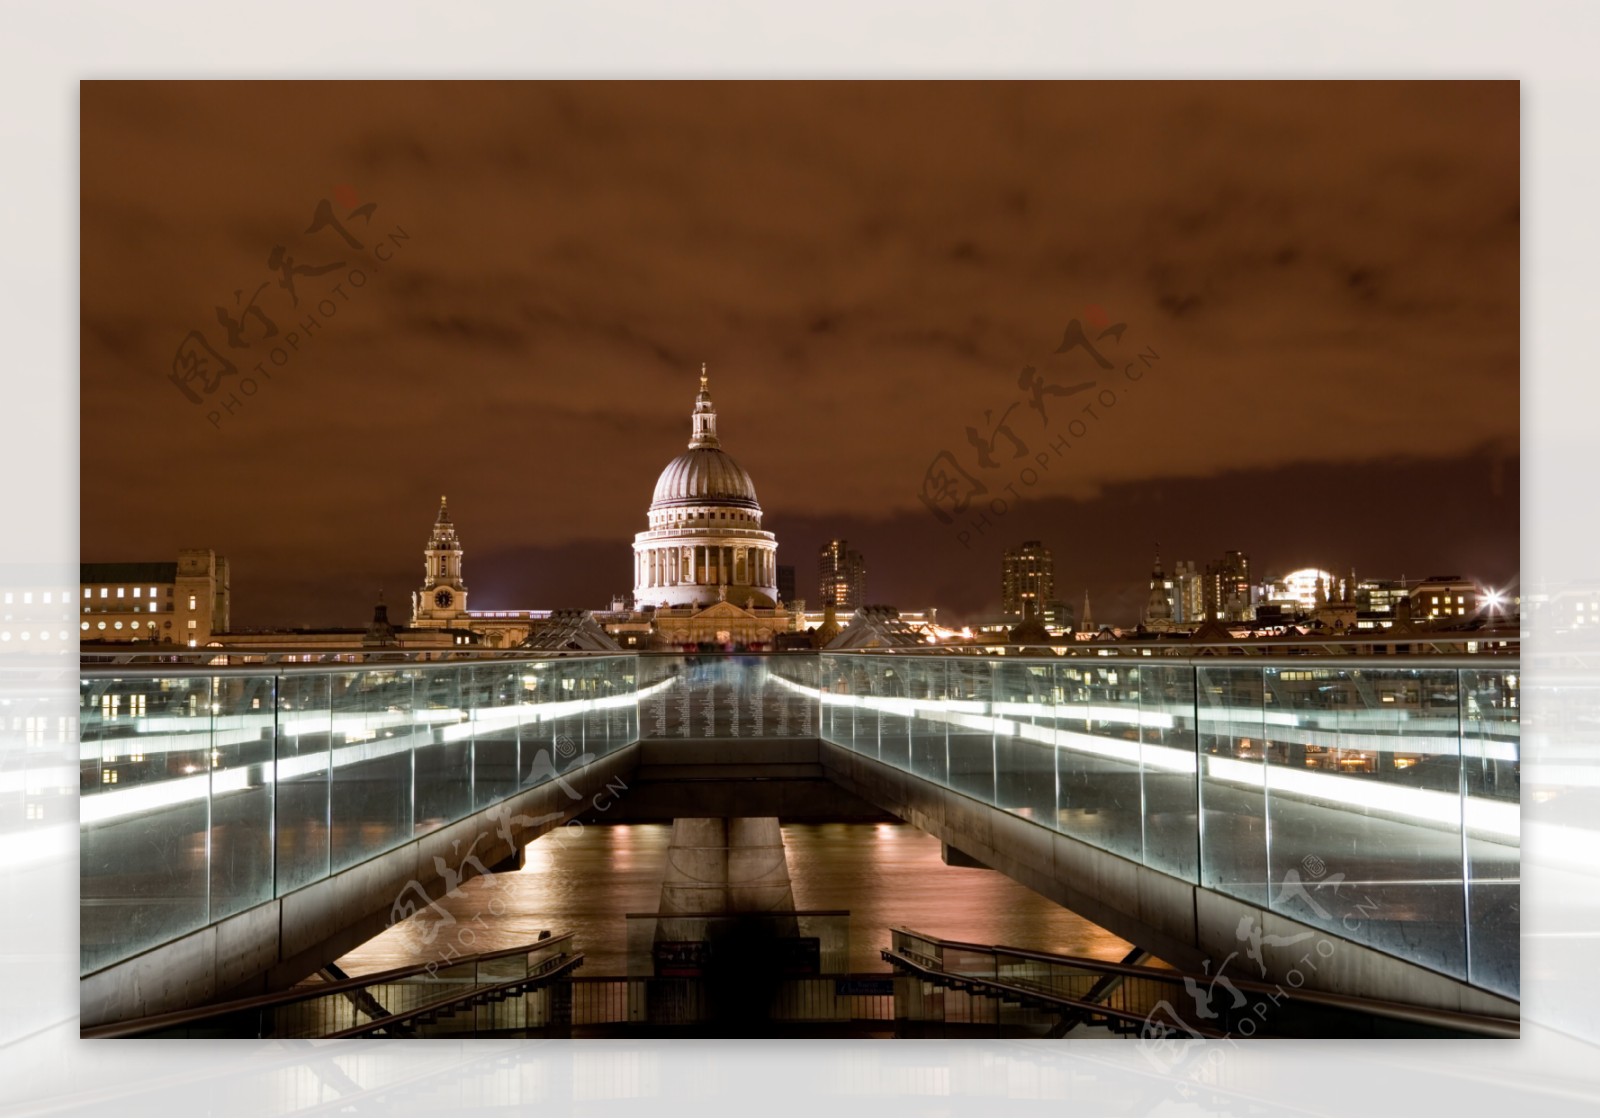 唯美伦敦夜景图片